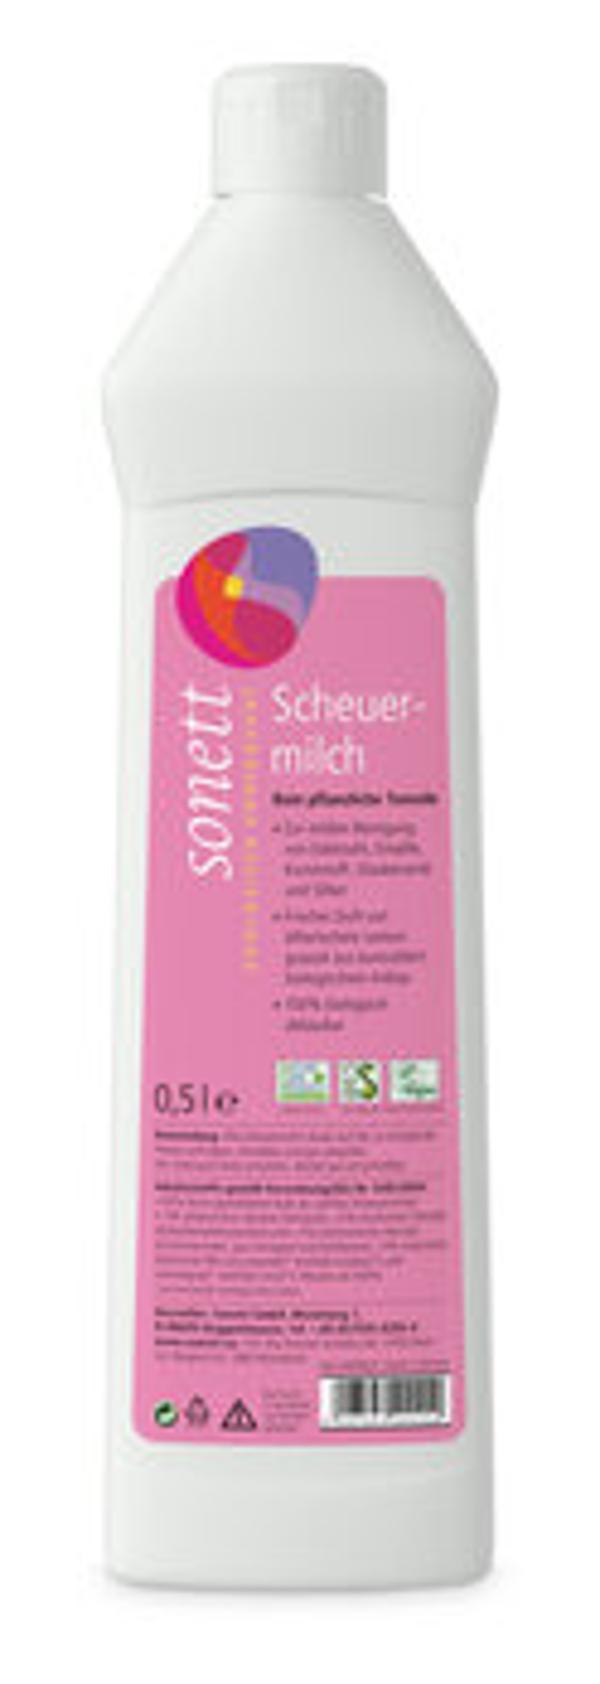 Produktfoto zu Scheuermilch 0,5l SNT